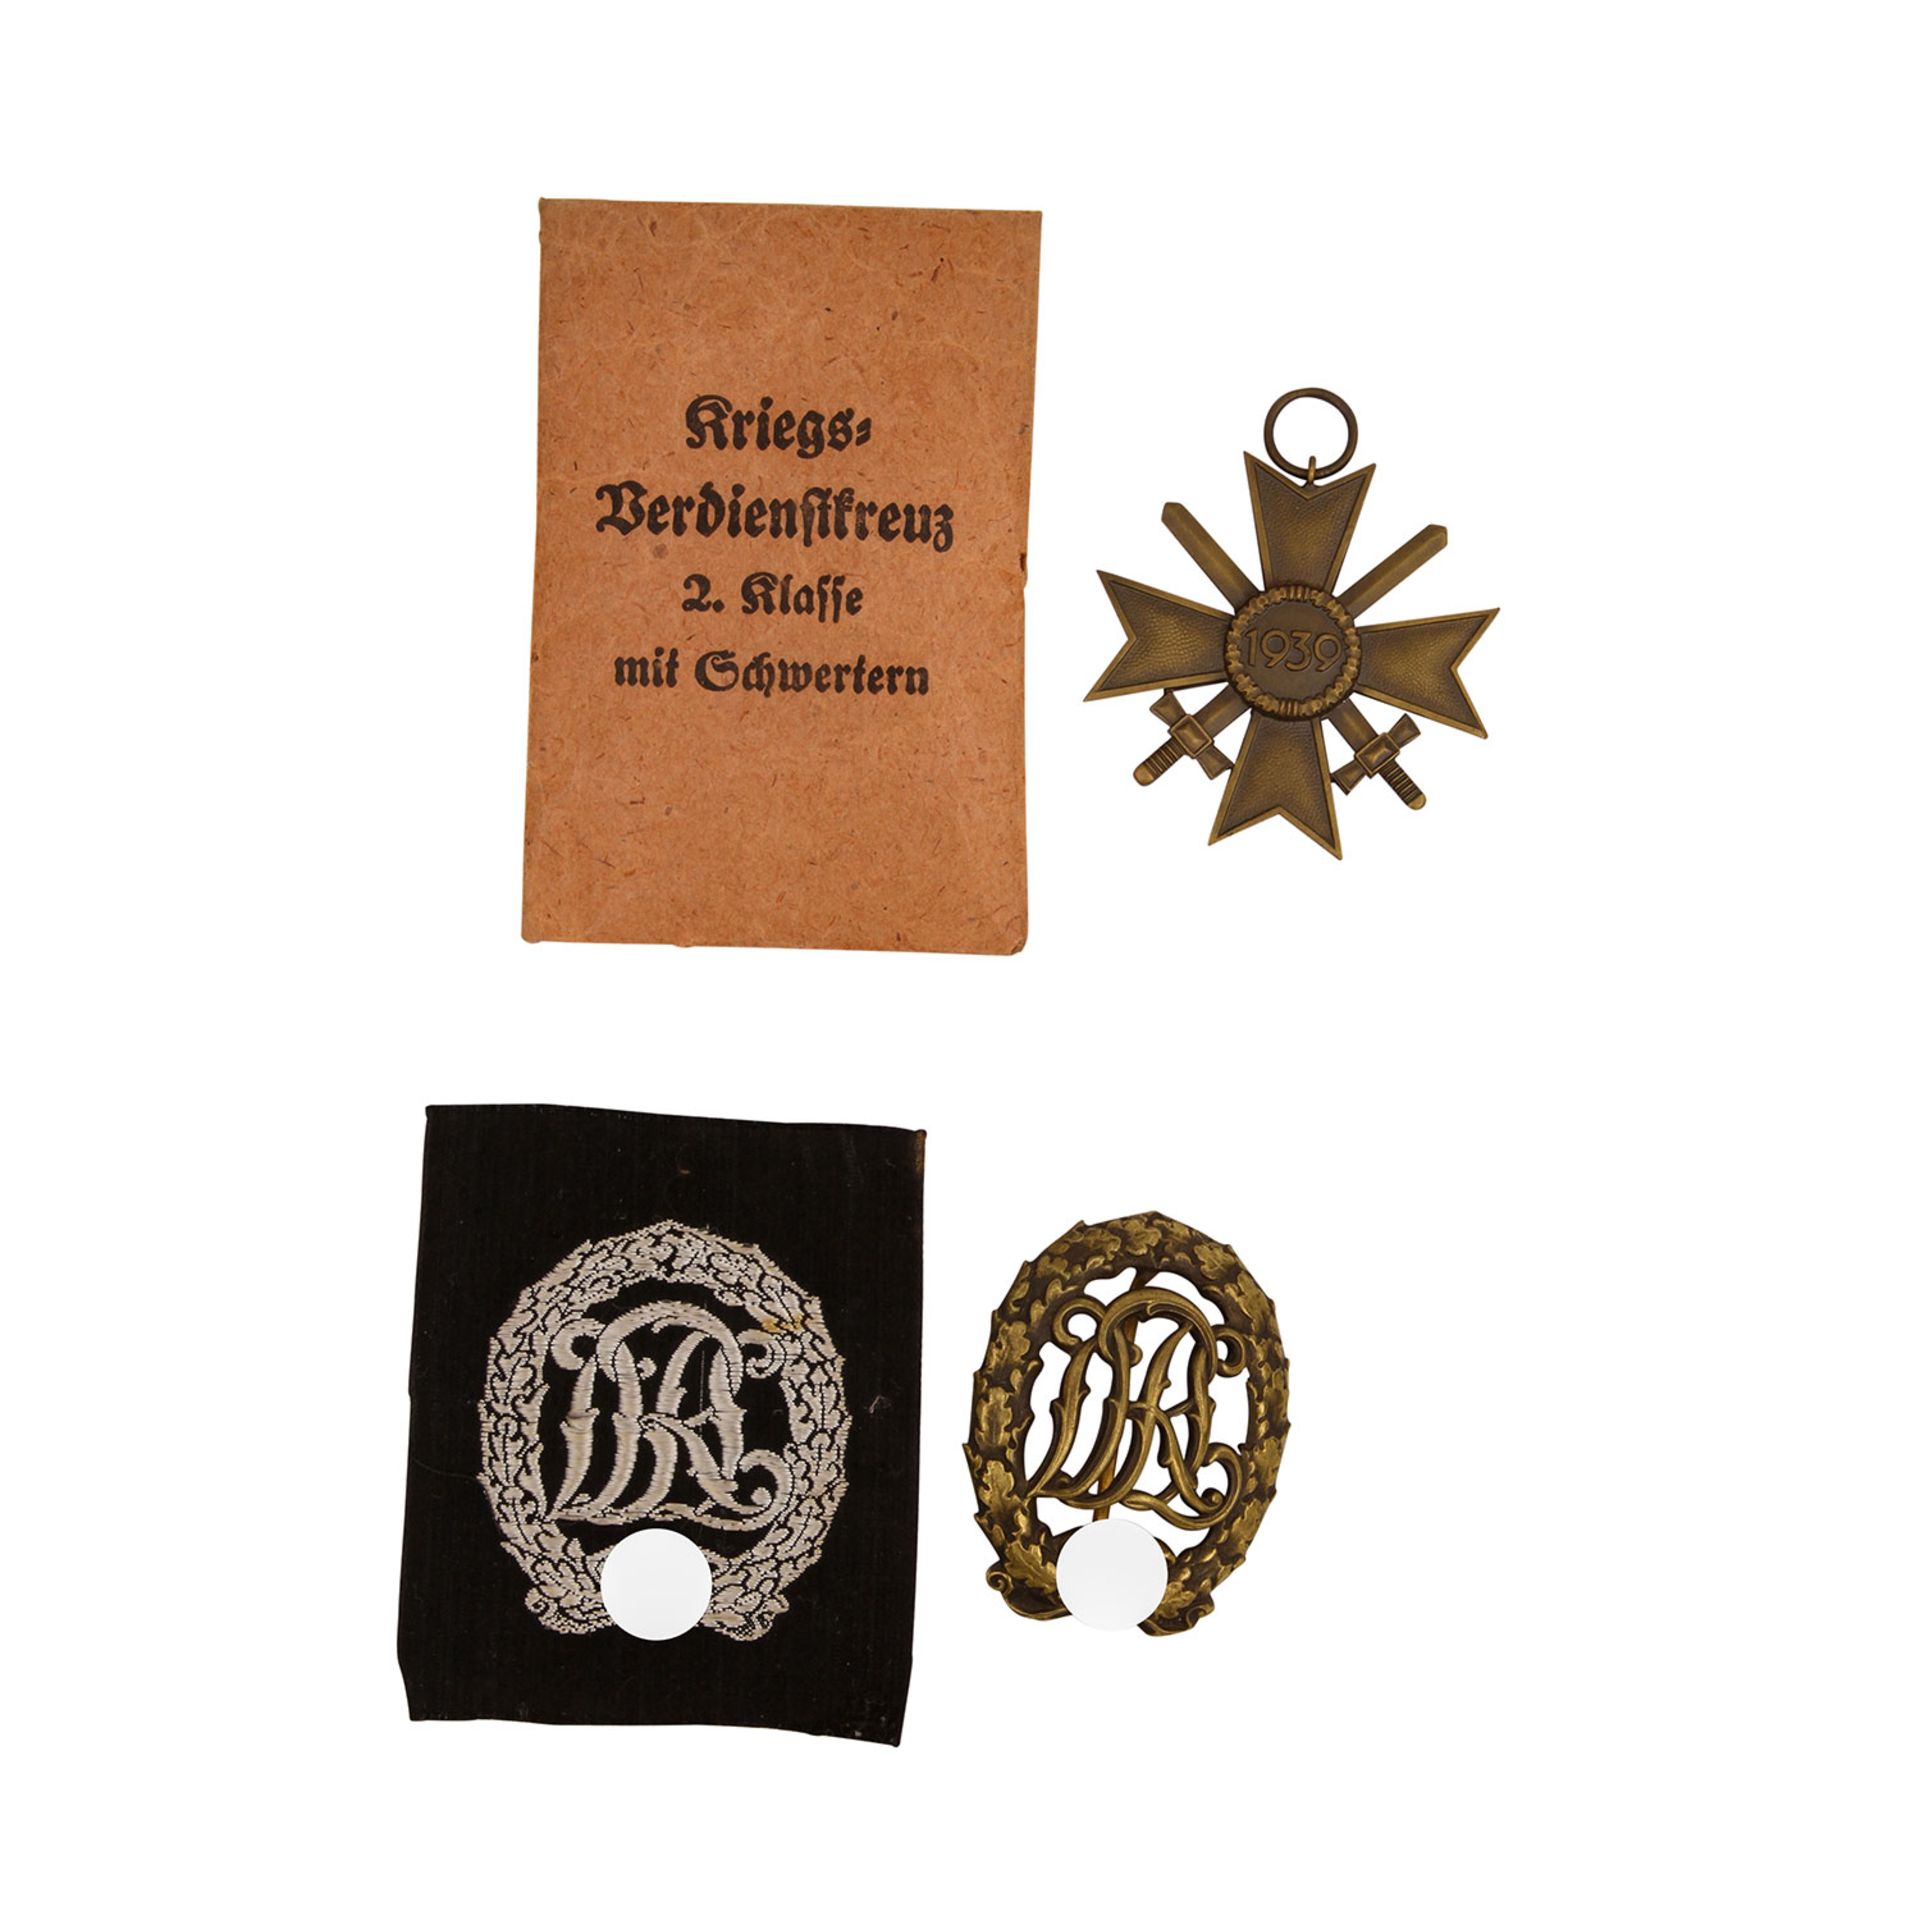 2 Auszeichnungen, Deutschland 1933-1945 - 1 x Deutsches Reichssportabzeichen DRL in Bronze mit